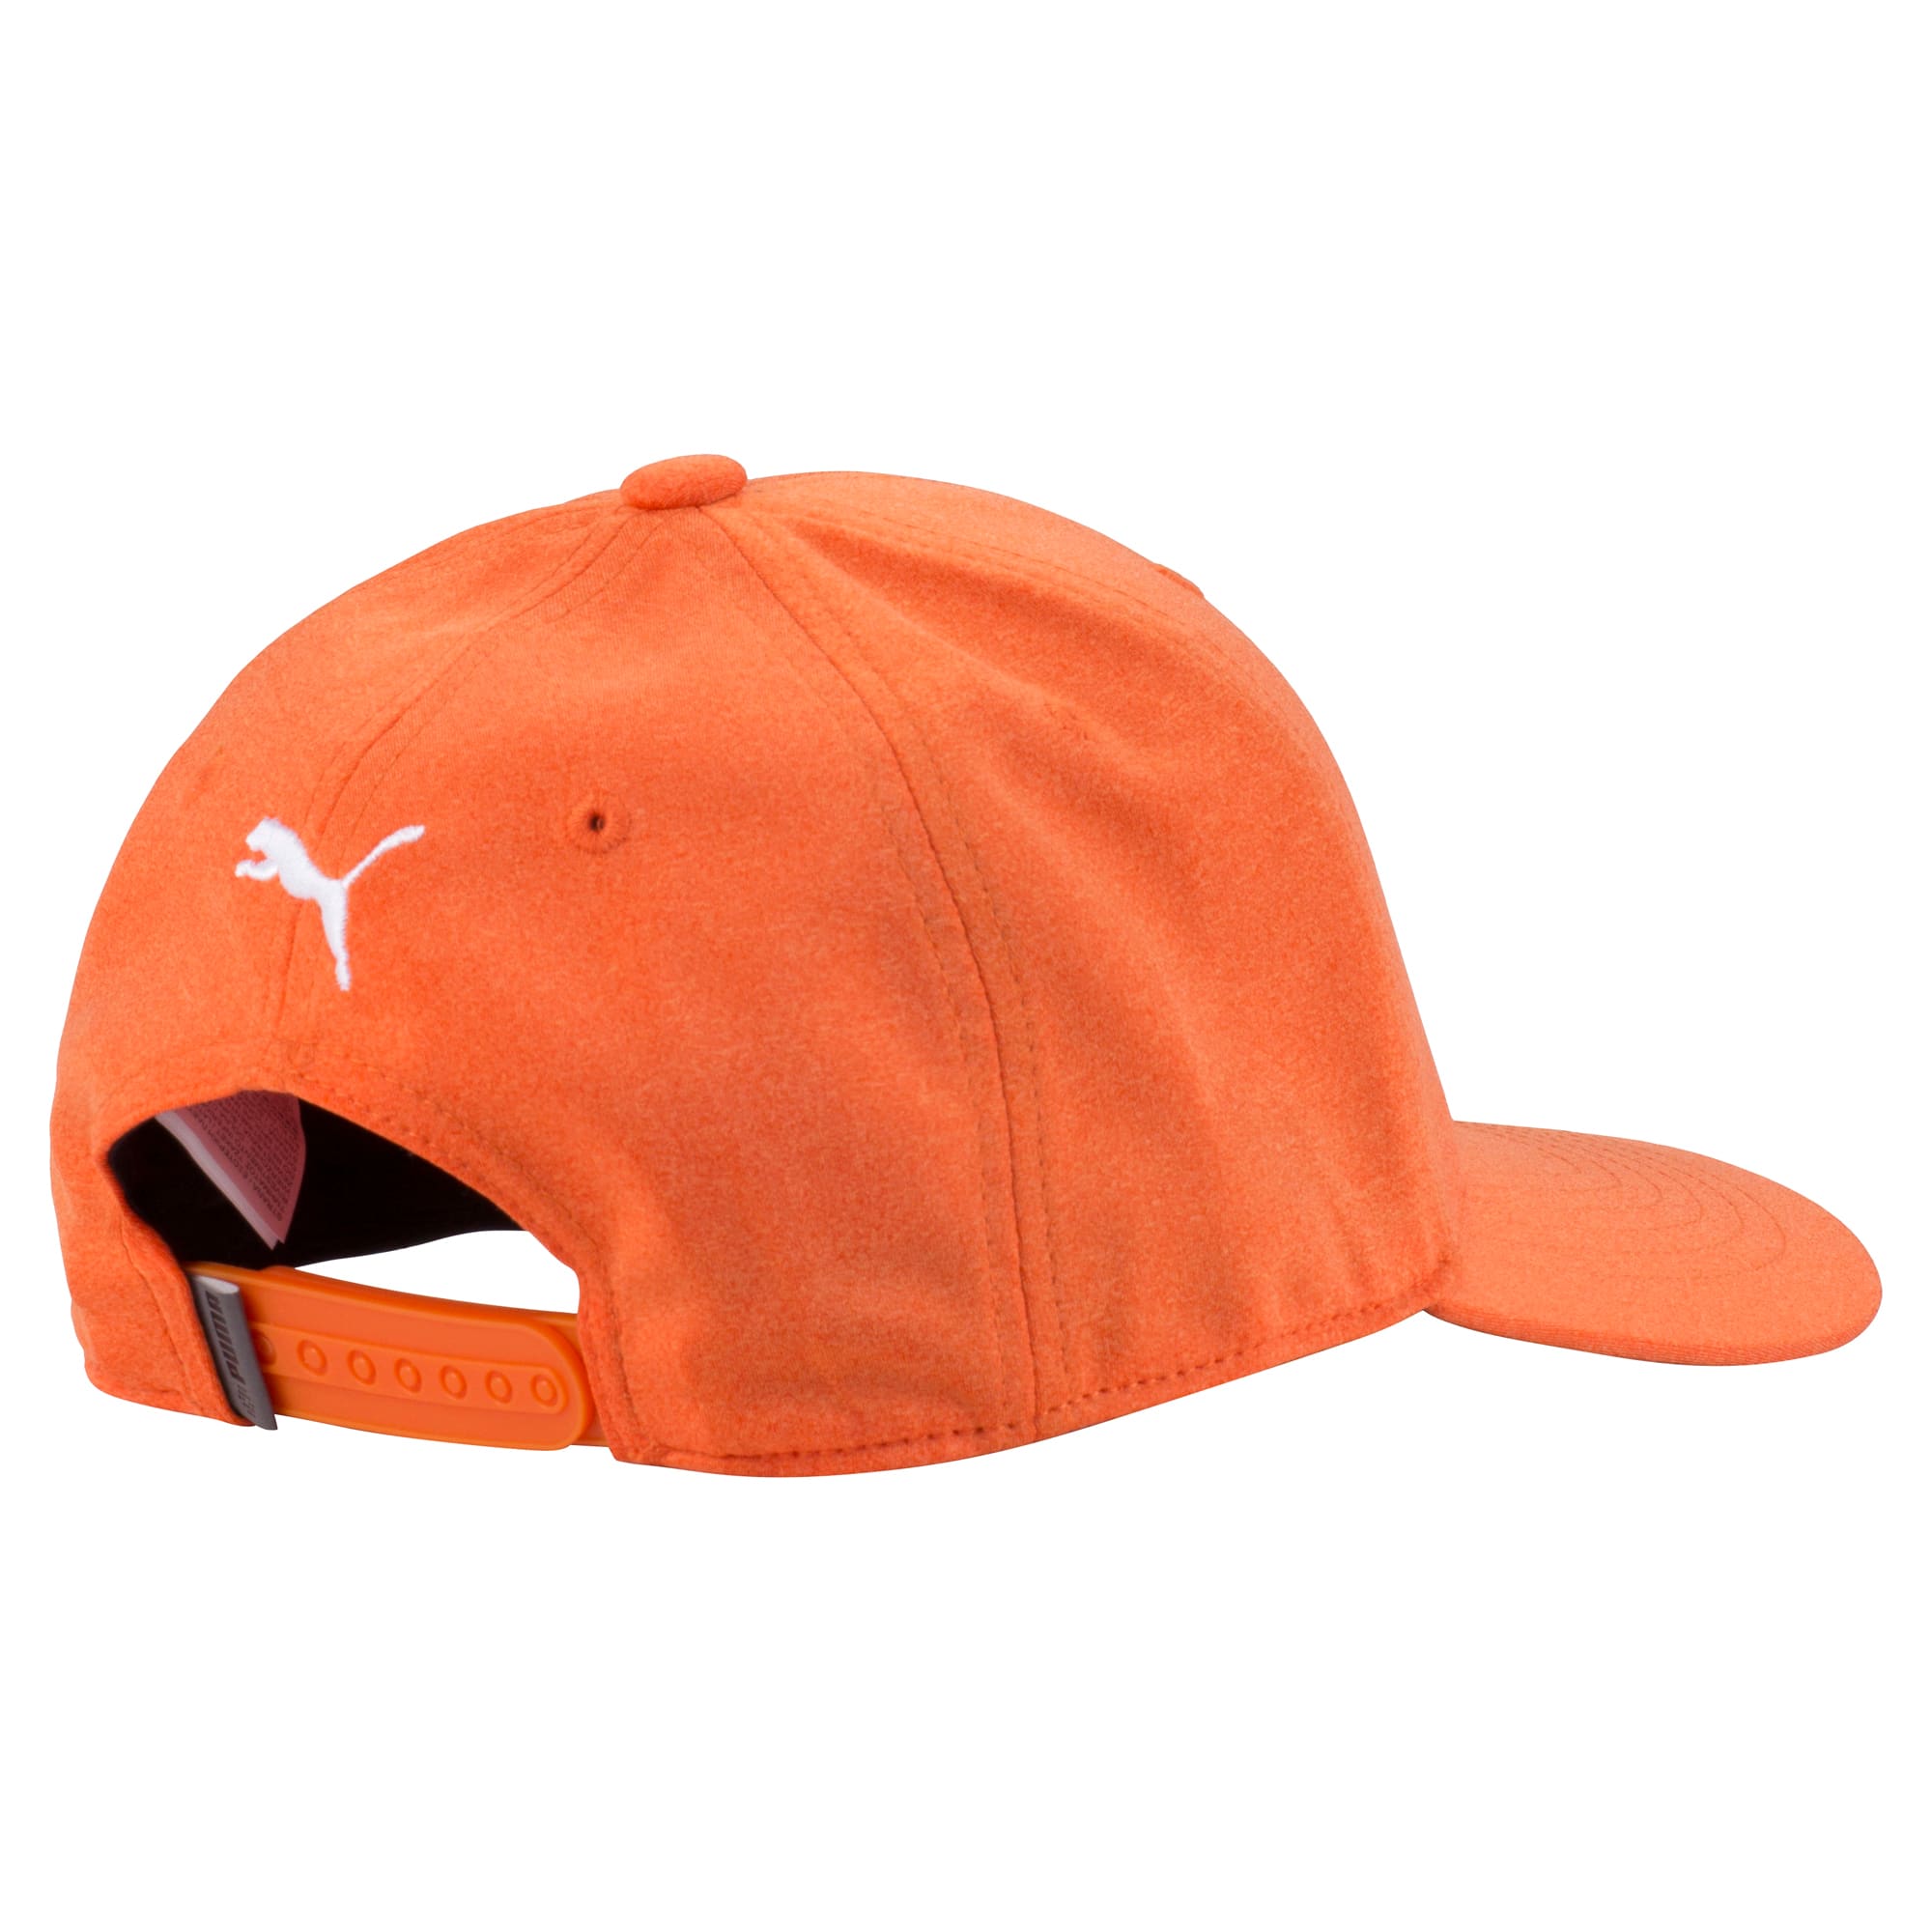 puma orange cap